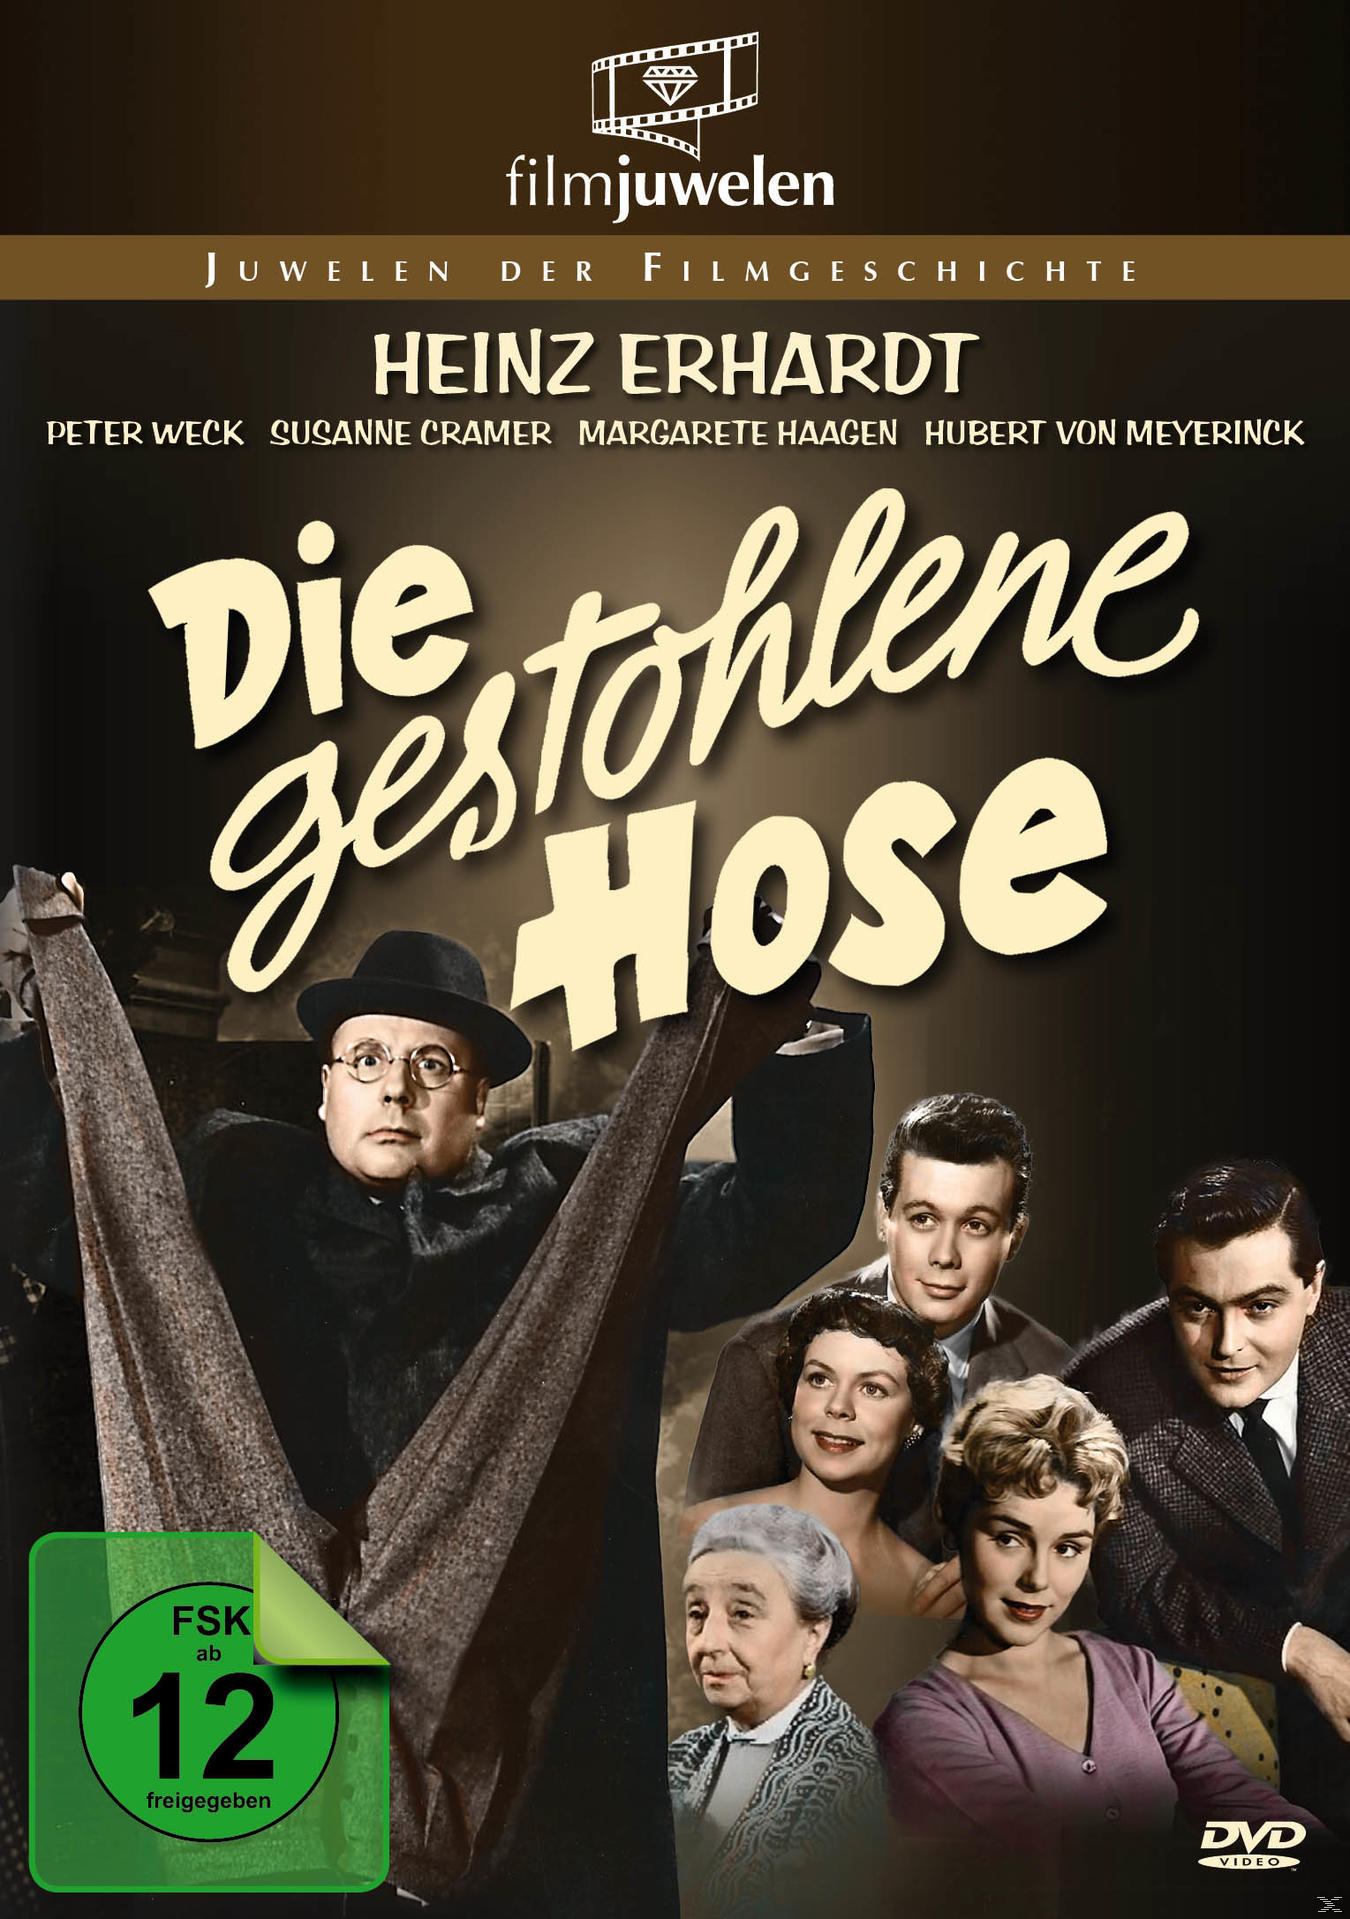 DVD Heinz Hose gestohlene Erhardt: Die